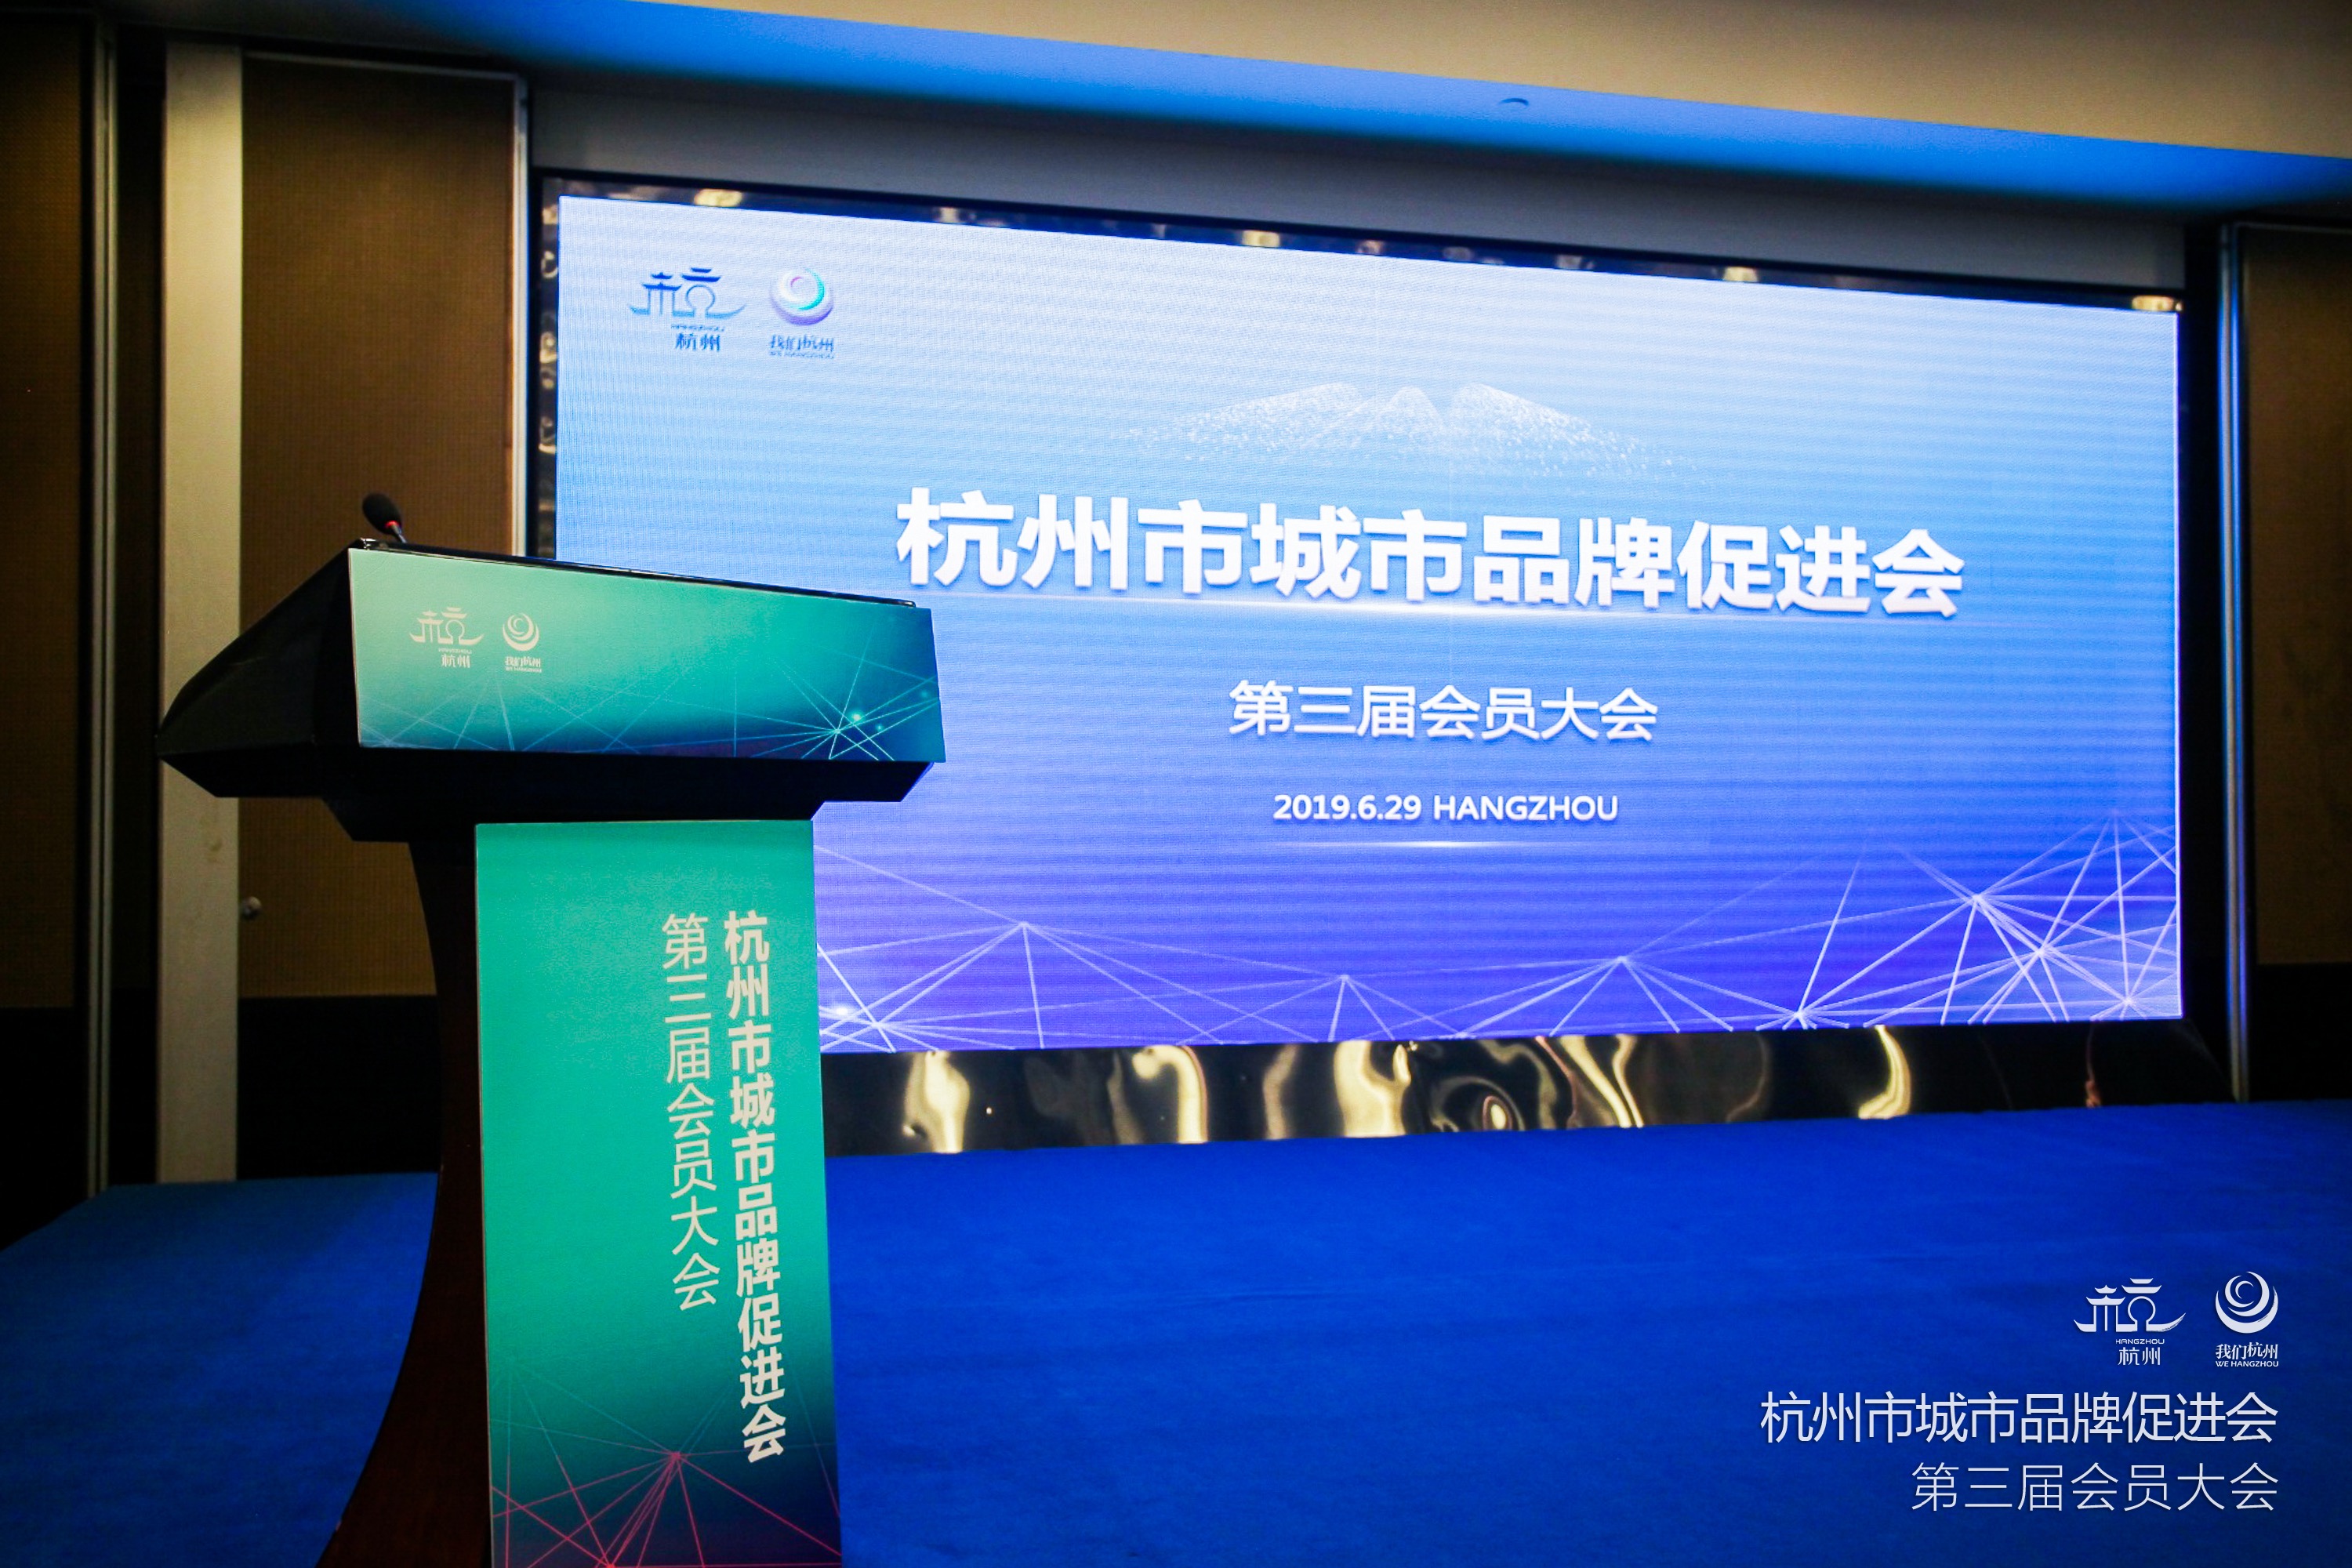 達利正式成為杭州市城市品牌促進會會員單位，助力杭城打造「生活品質之城」